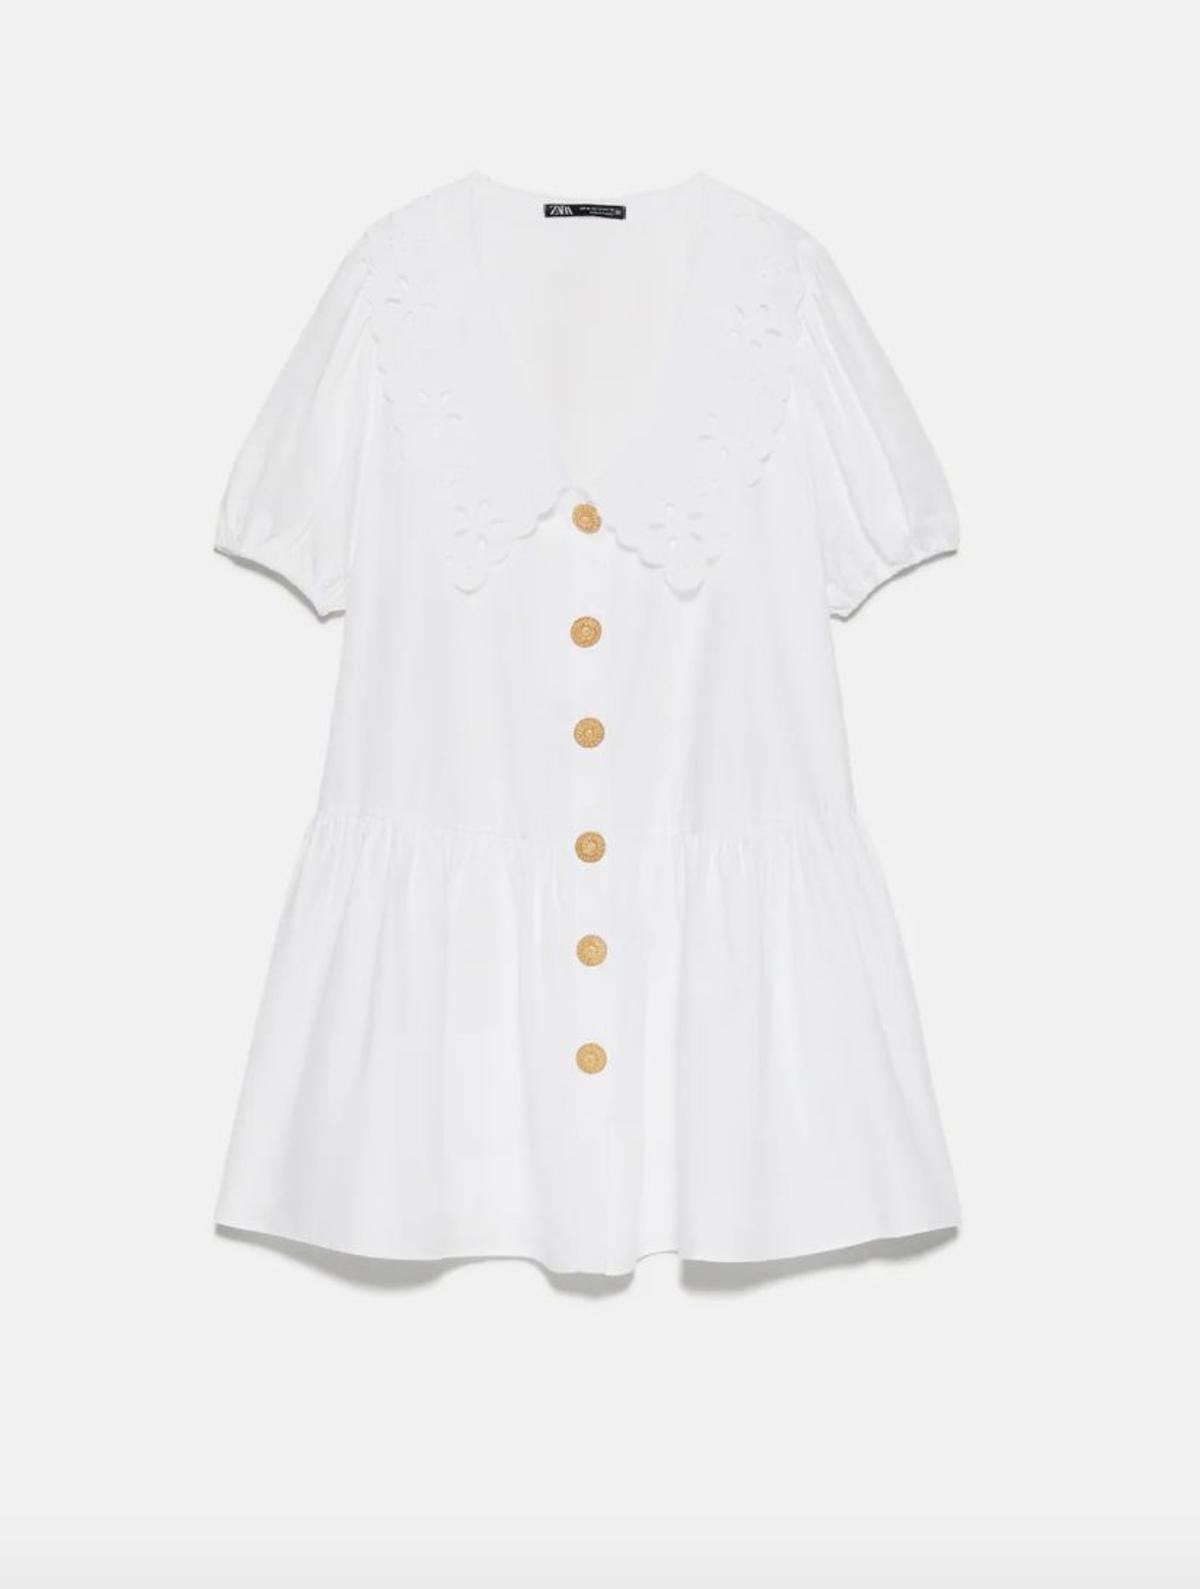 Vestido blanco de popelín, de las rebajas de Zara